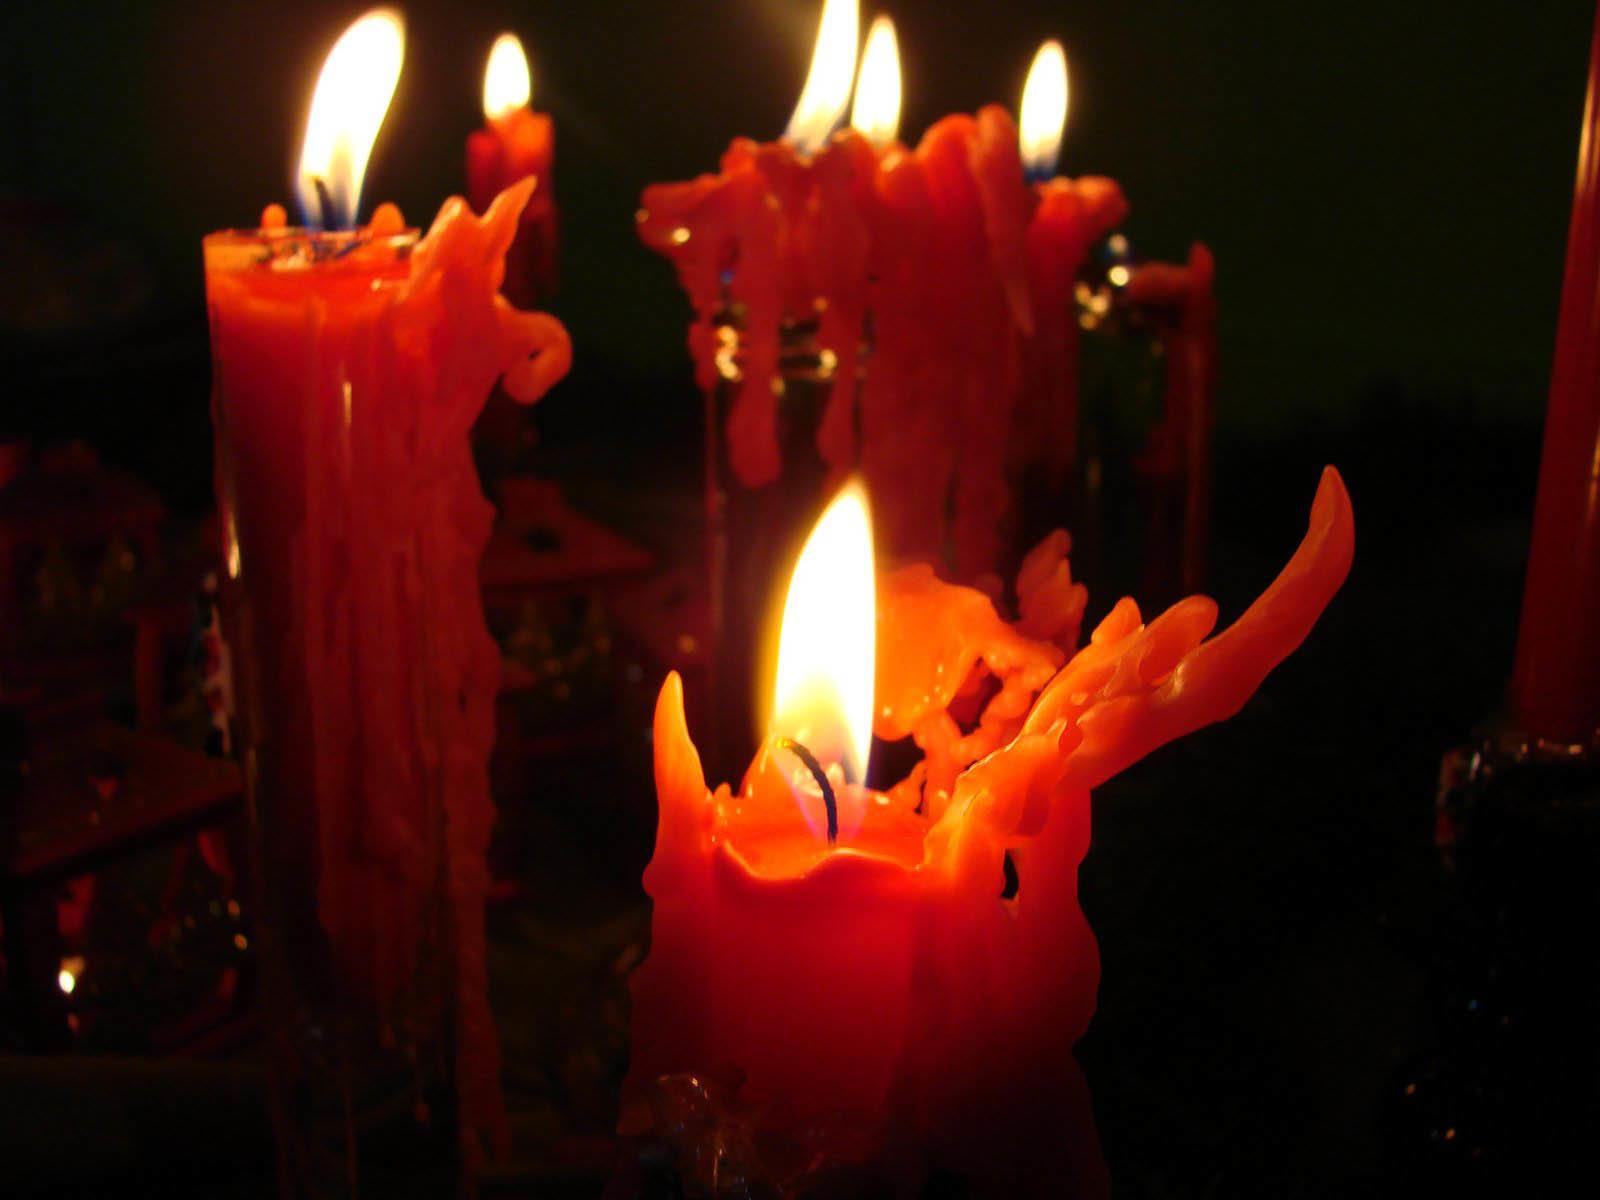 Горят три свечи. Красные магические свечи. Ритуальные свечи. Ритуальные свечи красные. Горящие свечи.